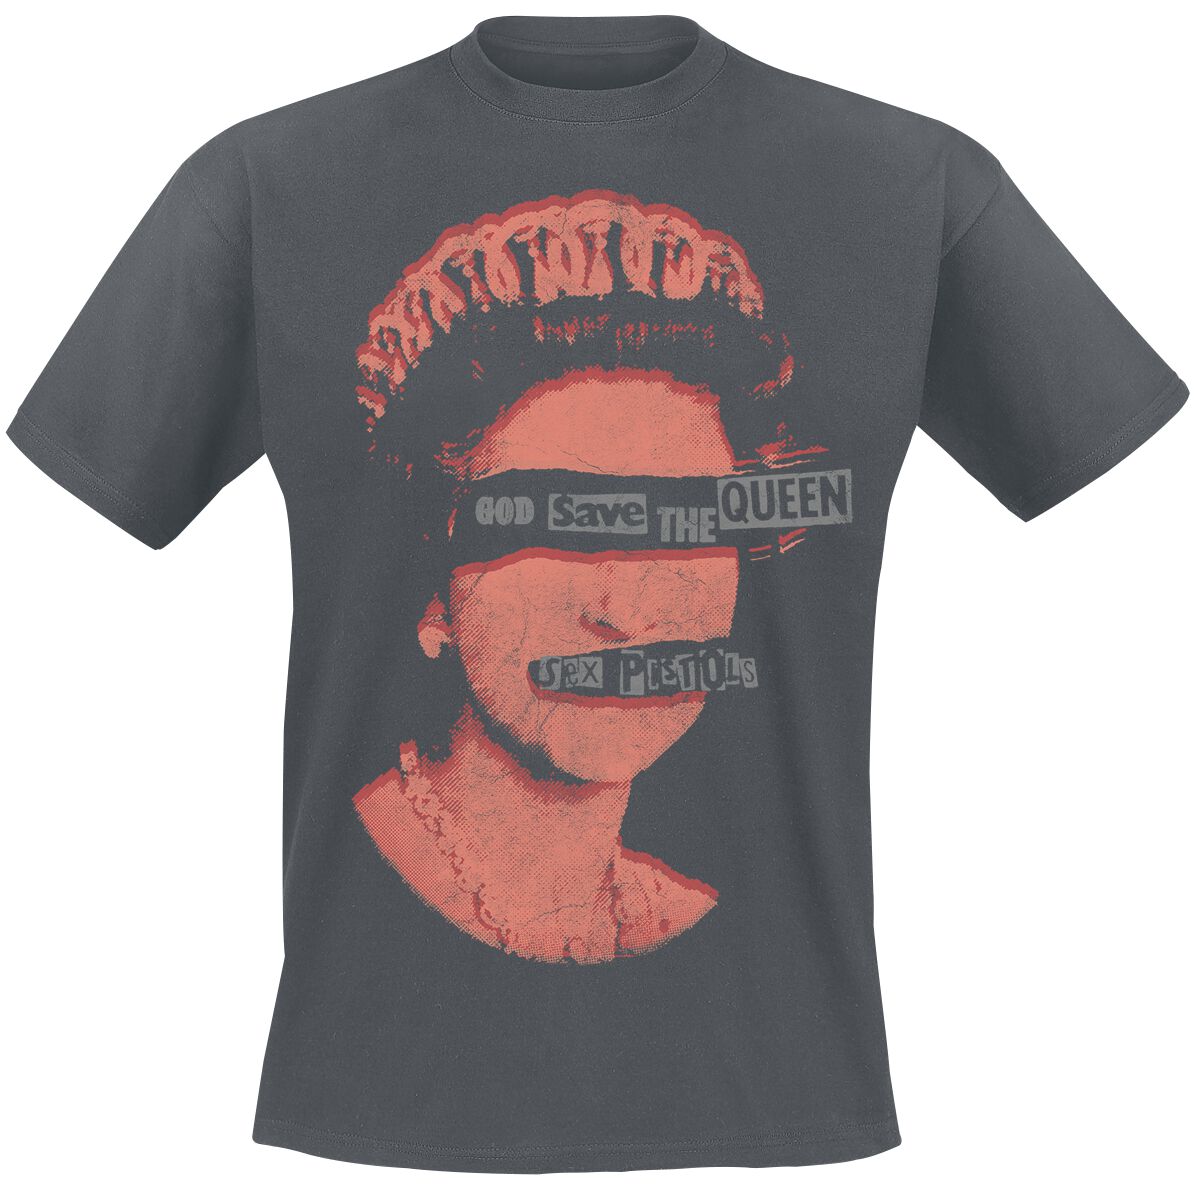 Sex Pistols T-Shirt - God Save The Queen - S bis XXL - für Männer - Größe XXL - dunkelgrau  - Lizenziertes Merchandise!